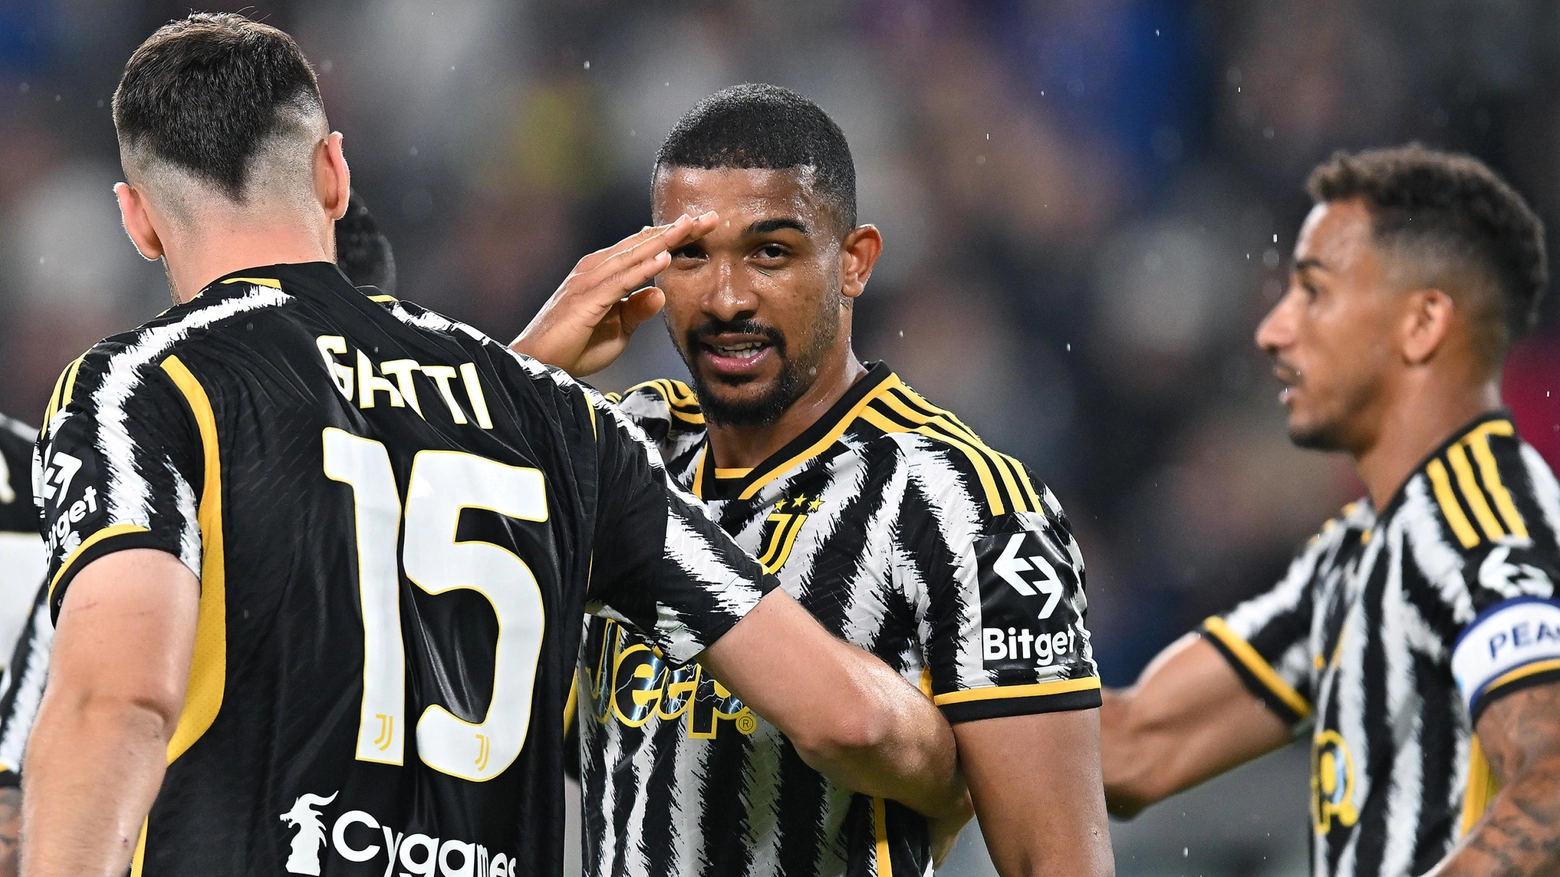 Europa League, Juventus e Roma a caccia della finalissima: probabili formazioni e orari tv